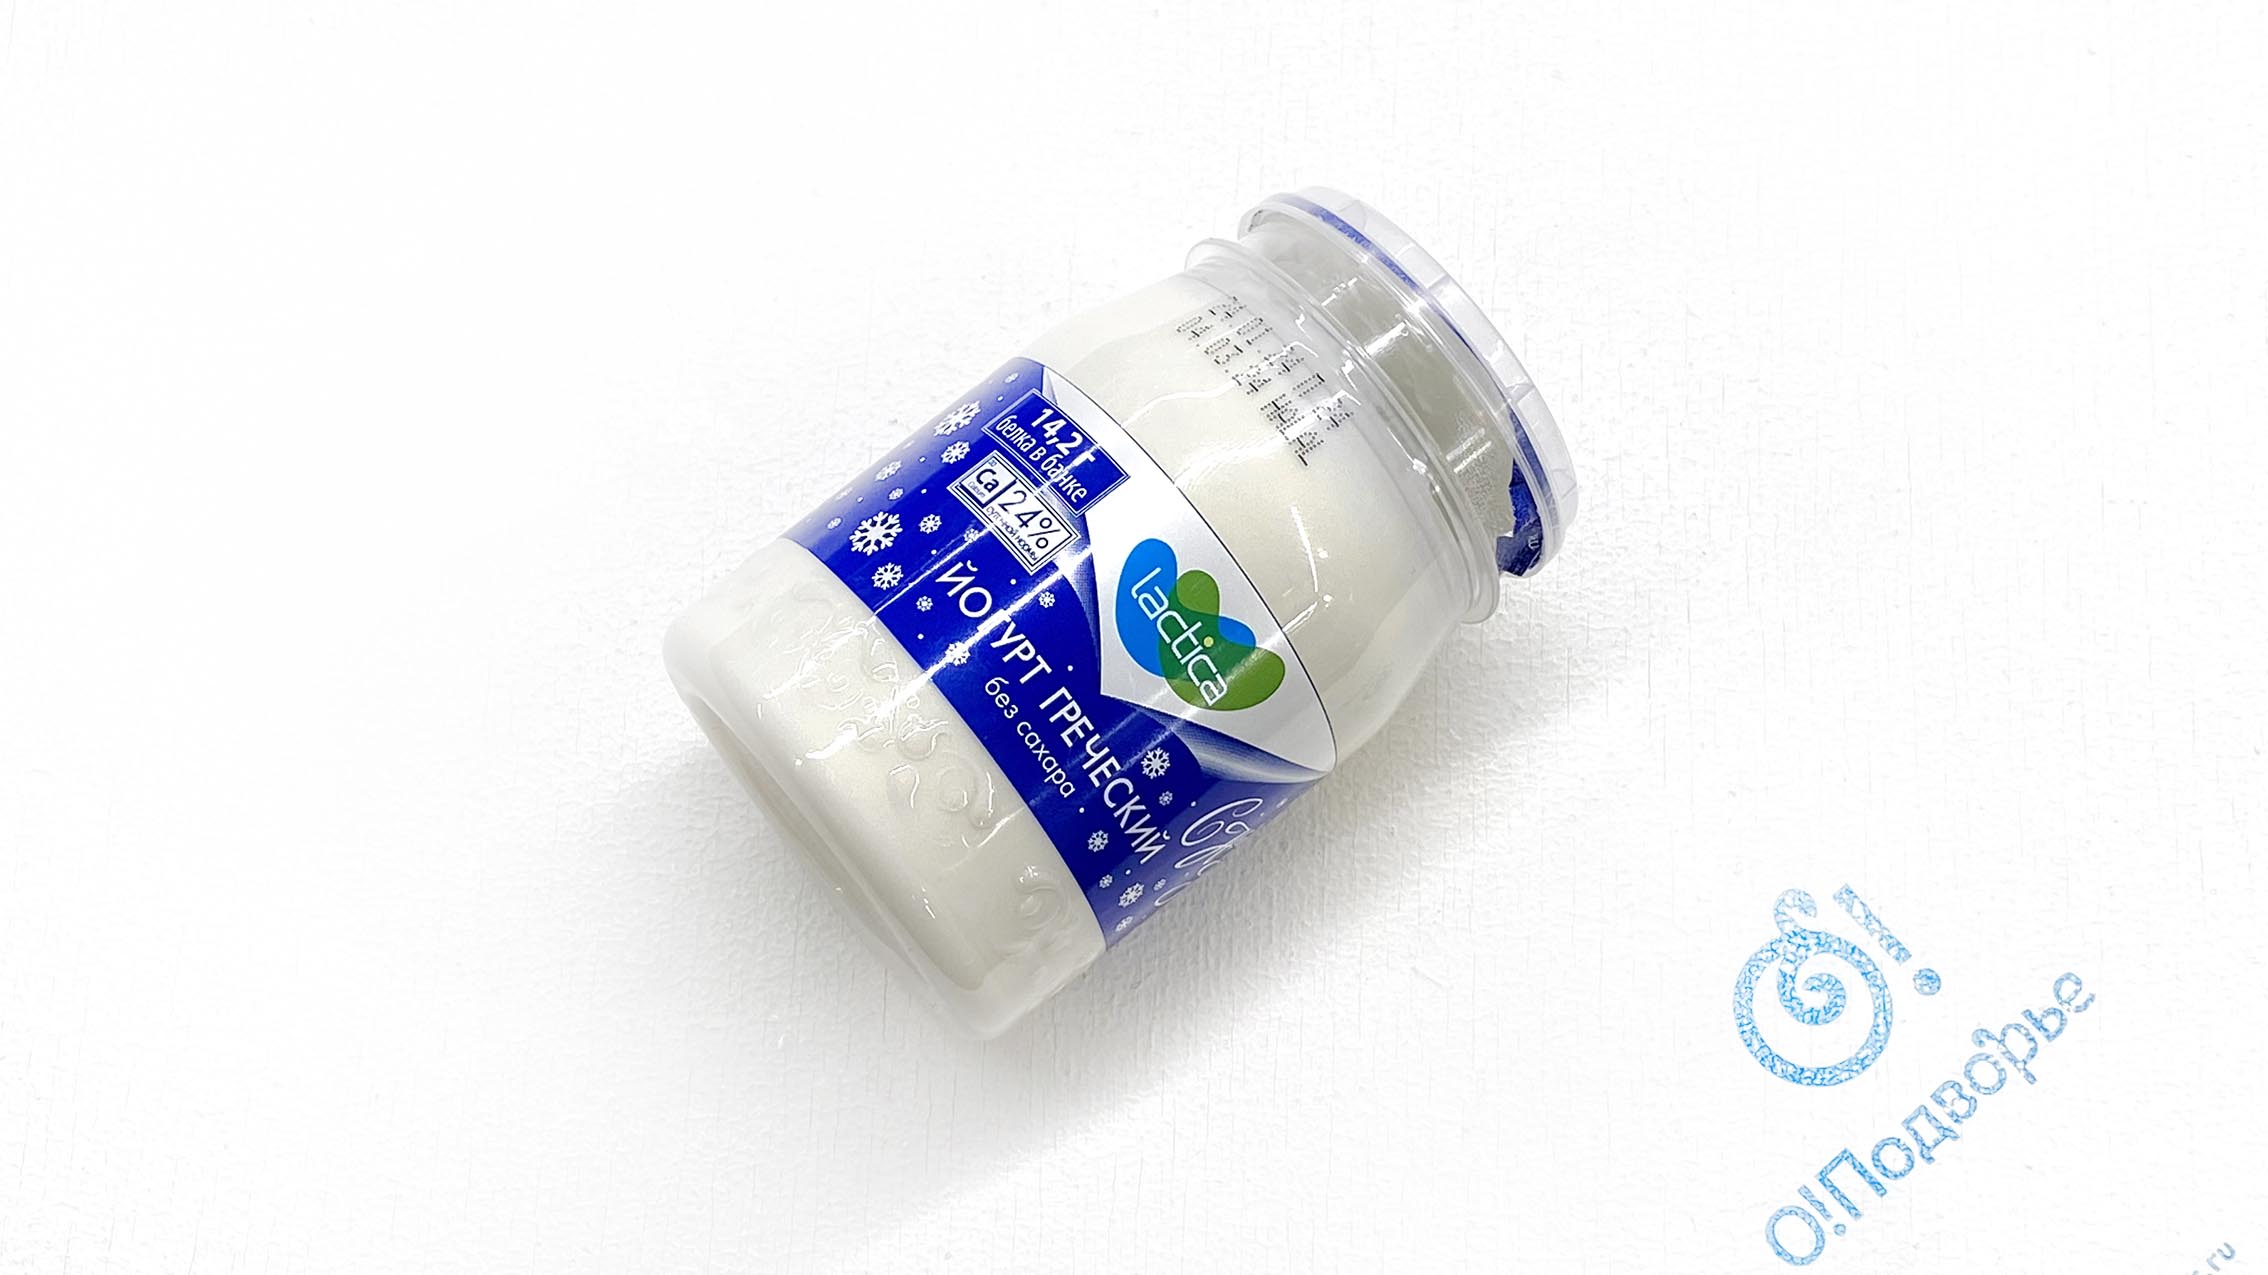 Йогурт натуральный греческий без сахара 4% "Lactica", АО "Лактис" 190 грамм, (Зл)